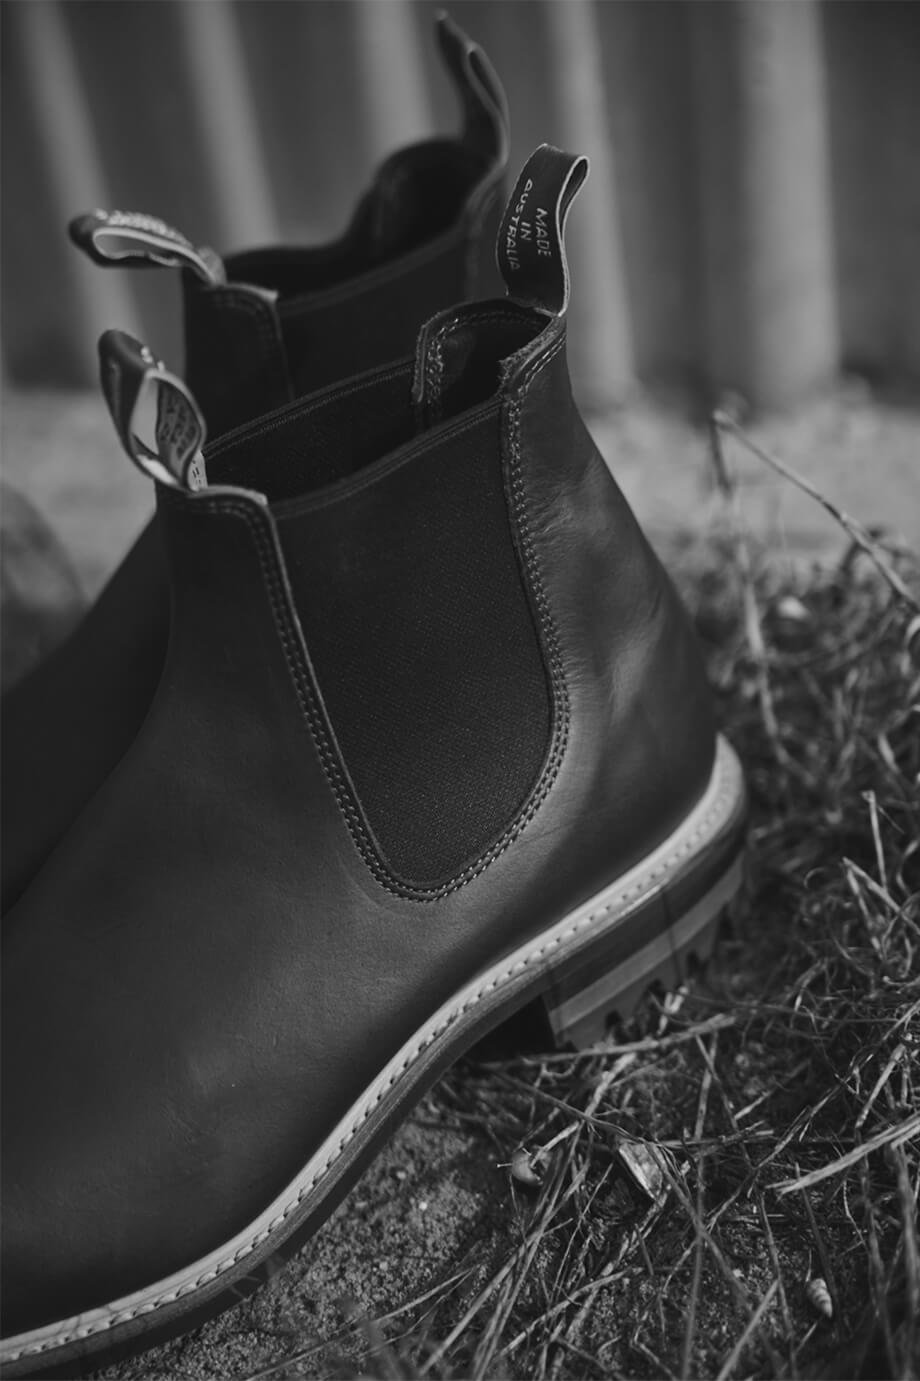 R. M. WILLIAMS GARDENER COMMANDO UNISEX - Classic ankle boots